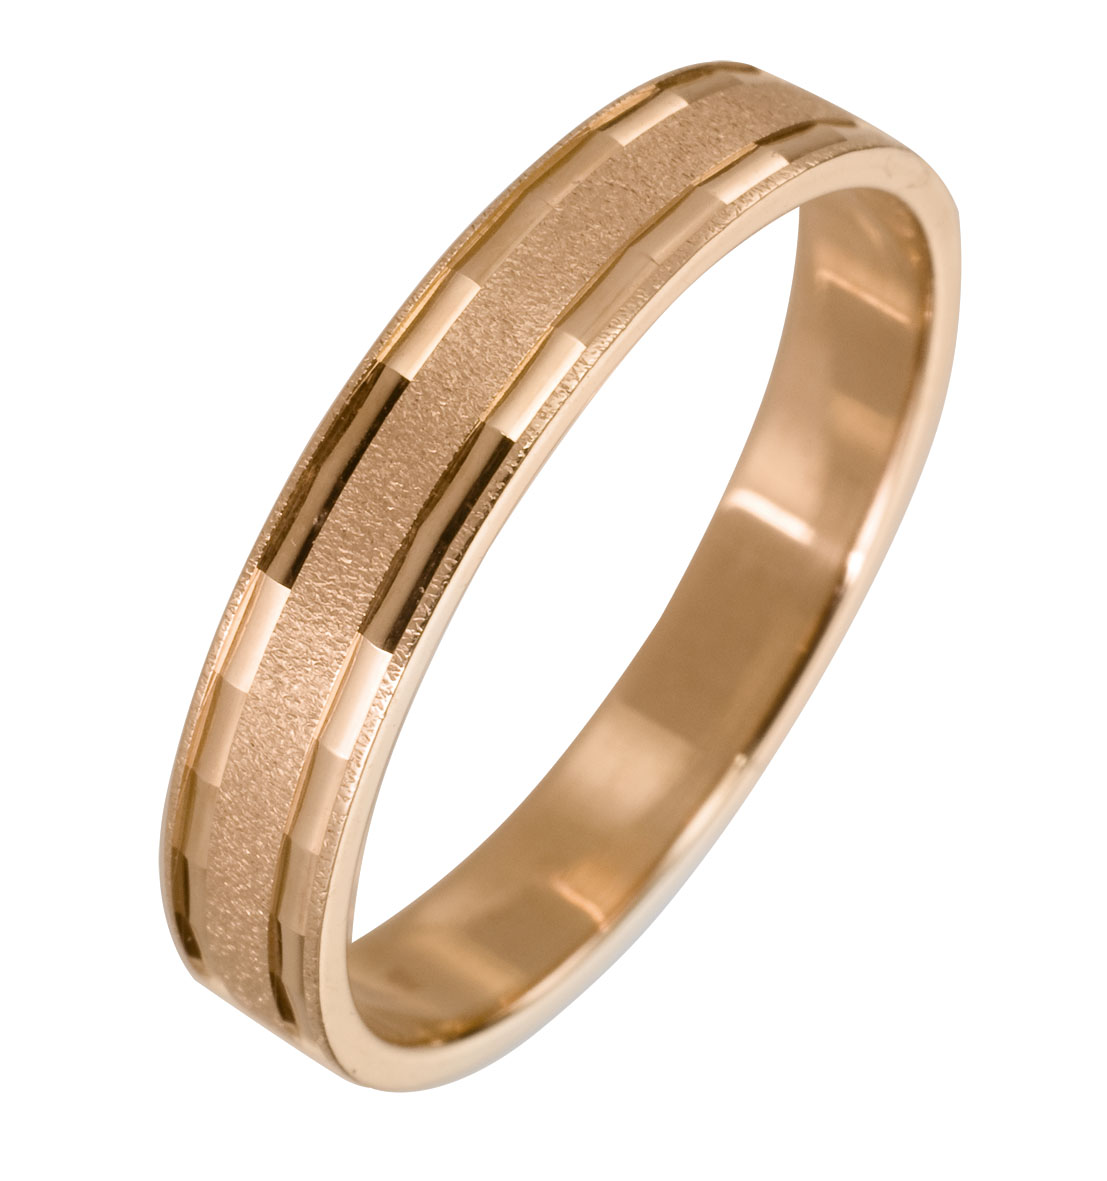 Найти золотое обручальное кольцо. Обручальное кольцо   Primossa. Кольцо обручальное мужское золото 585. Обручальное кольцо из желтого золота с матированием. Мужские обручальные кольца 585.